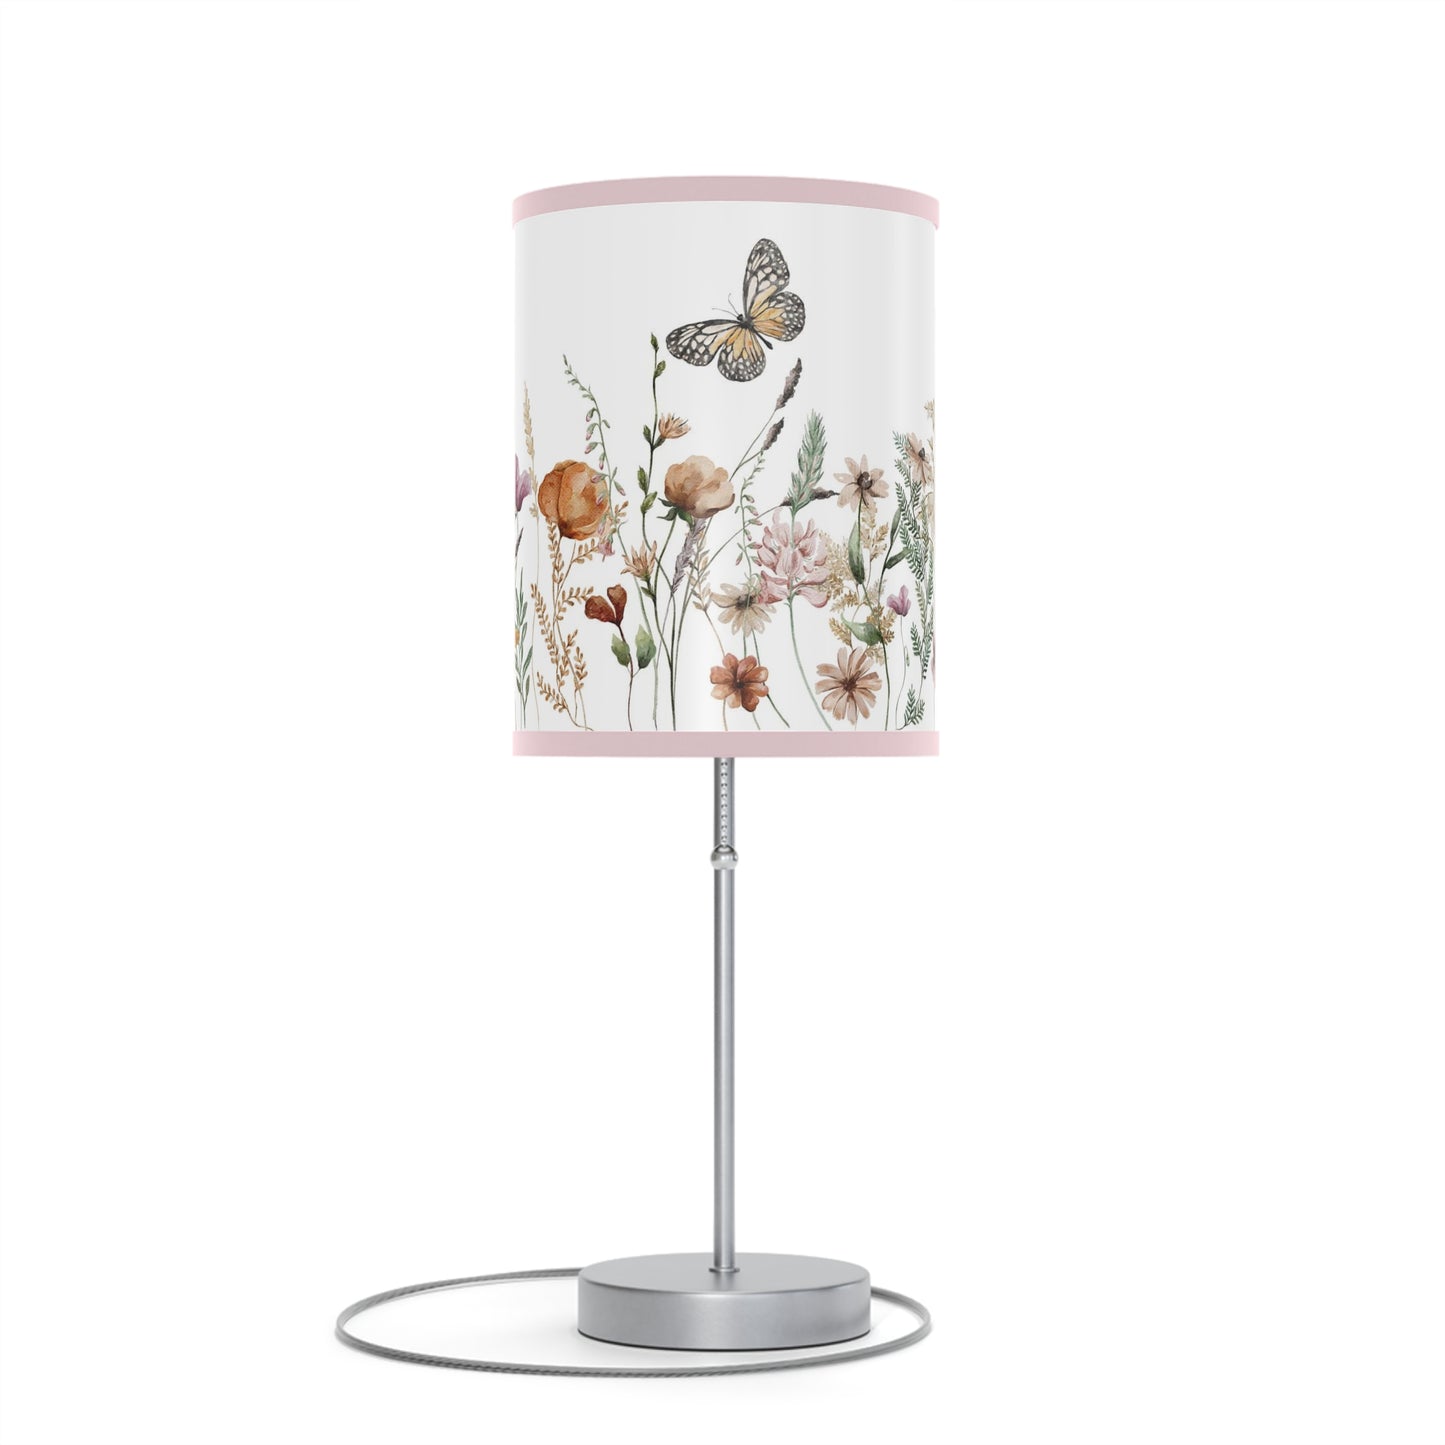 Wildflowers table lamp, Butterfly nursery decor - Butterfly Garden